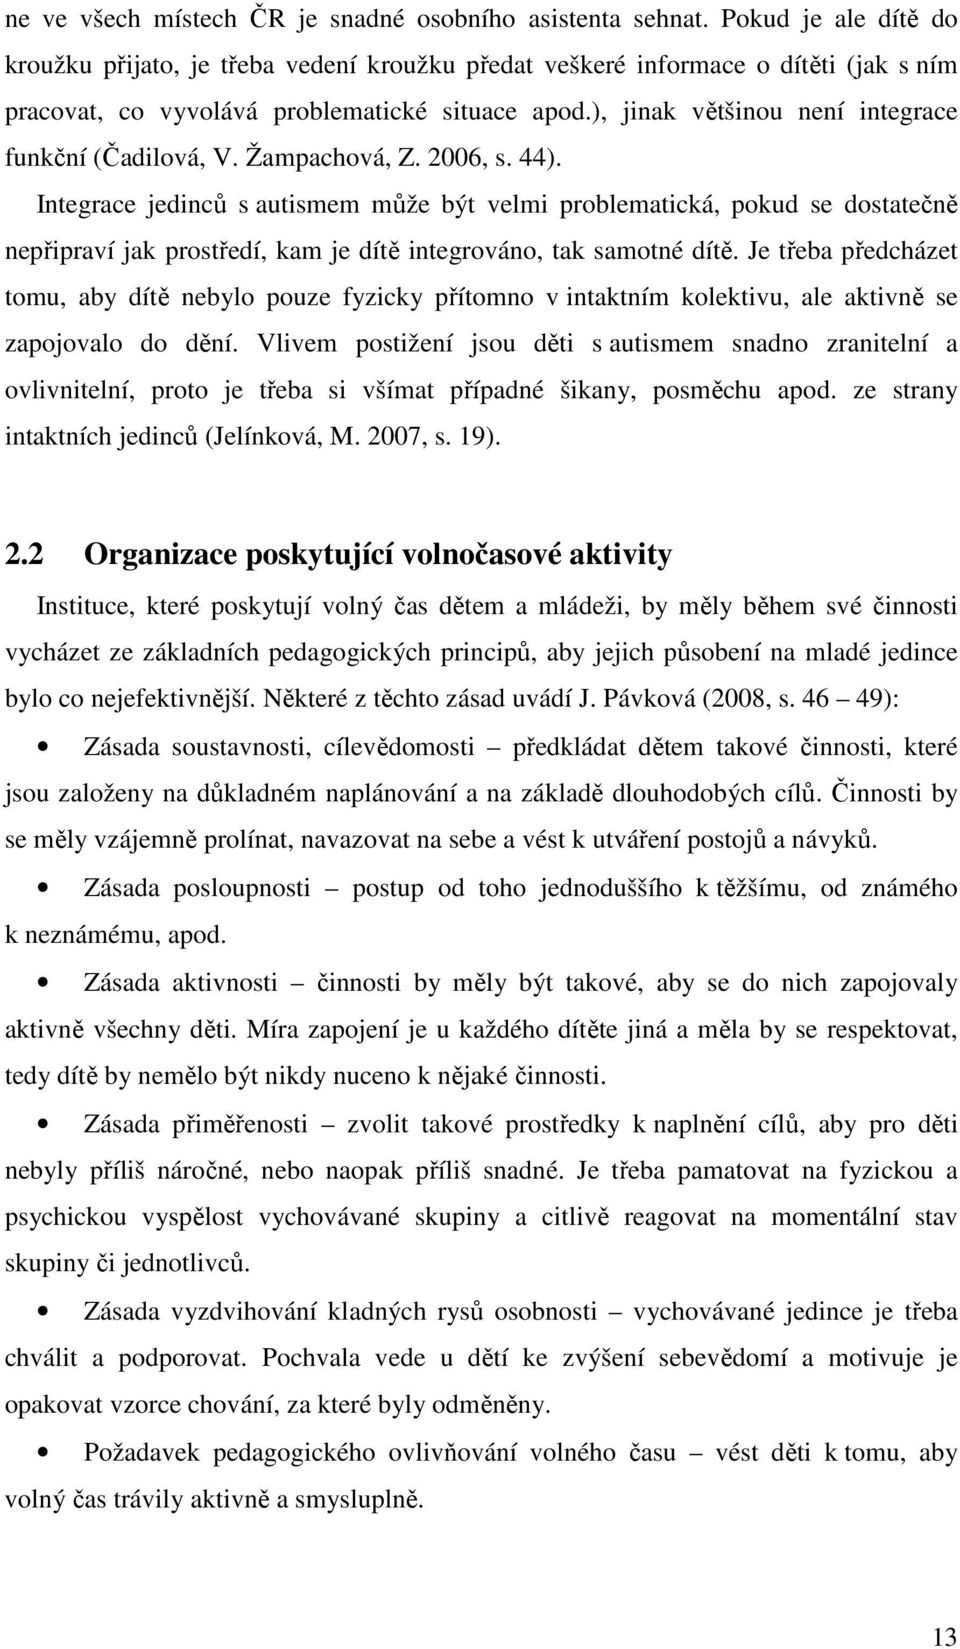 ), jinak většinou není integrace funkční (Čadilová, V. Žampachová, Z. 2006, s. 44).